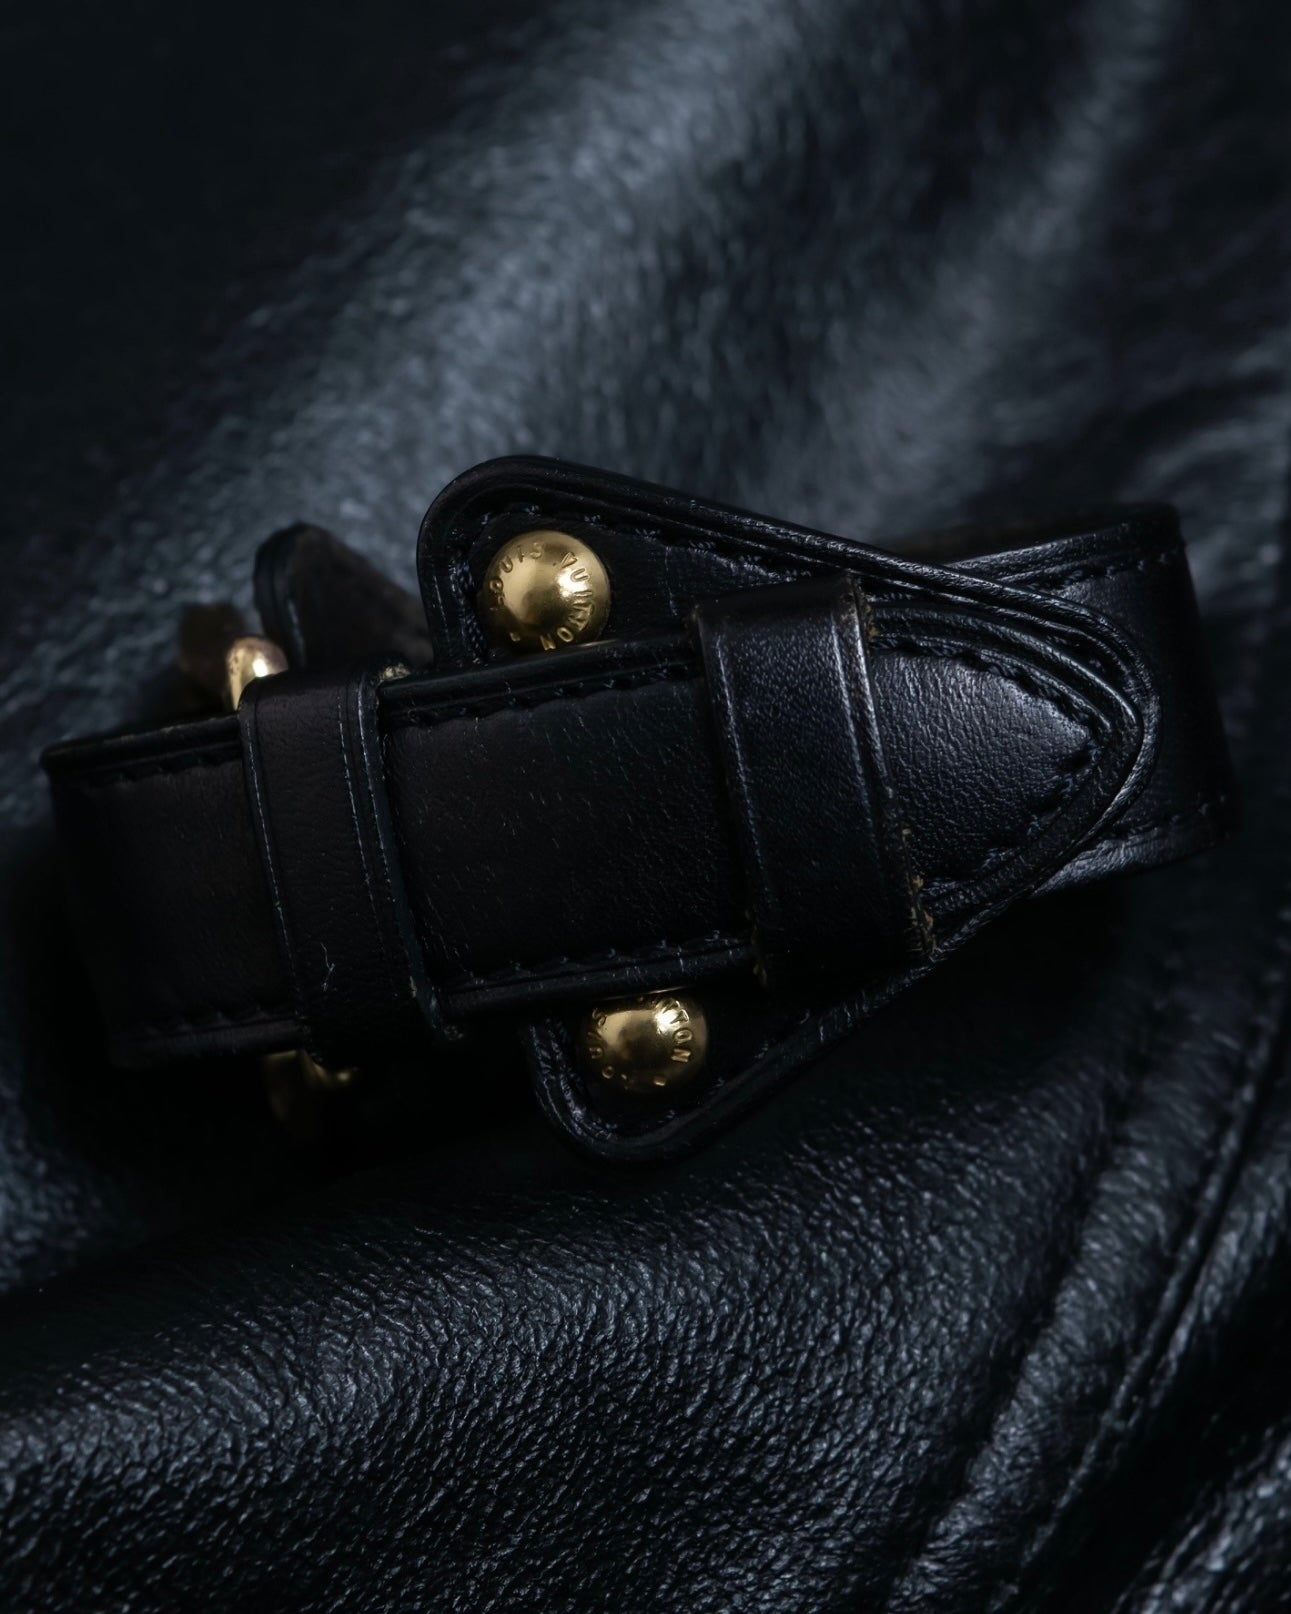 "Louis Vuitton" Belt motif leather bangle